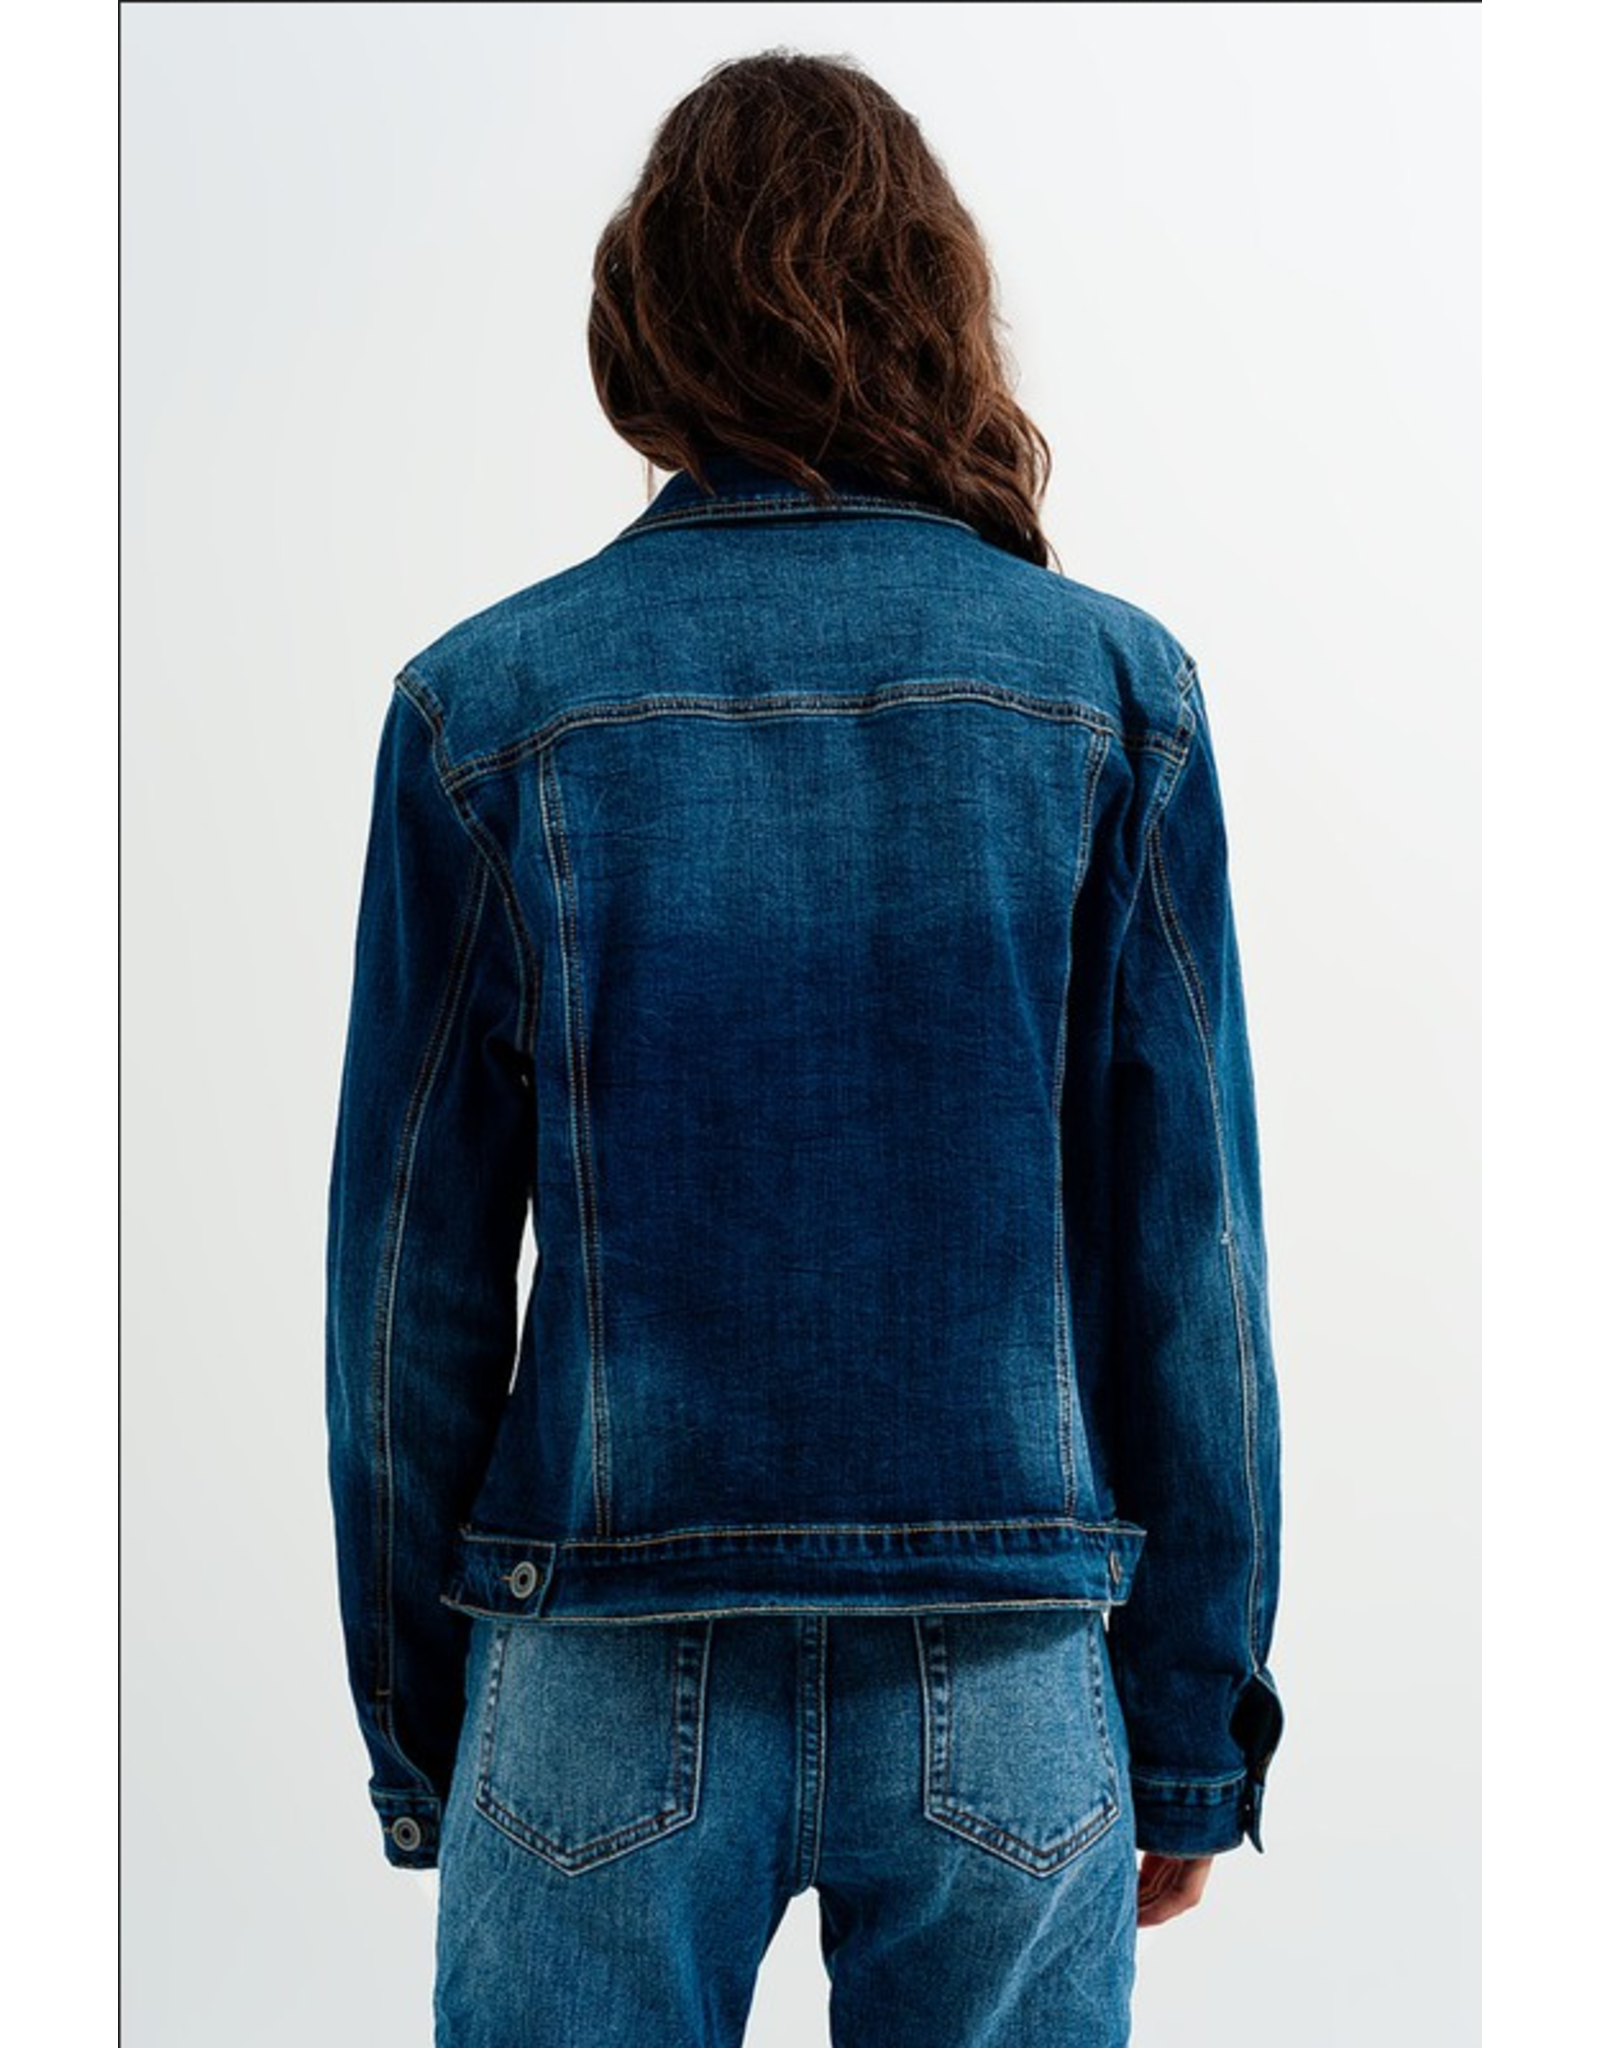 Q2 Cropped Denim Jacket in Darkwash Blue